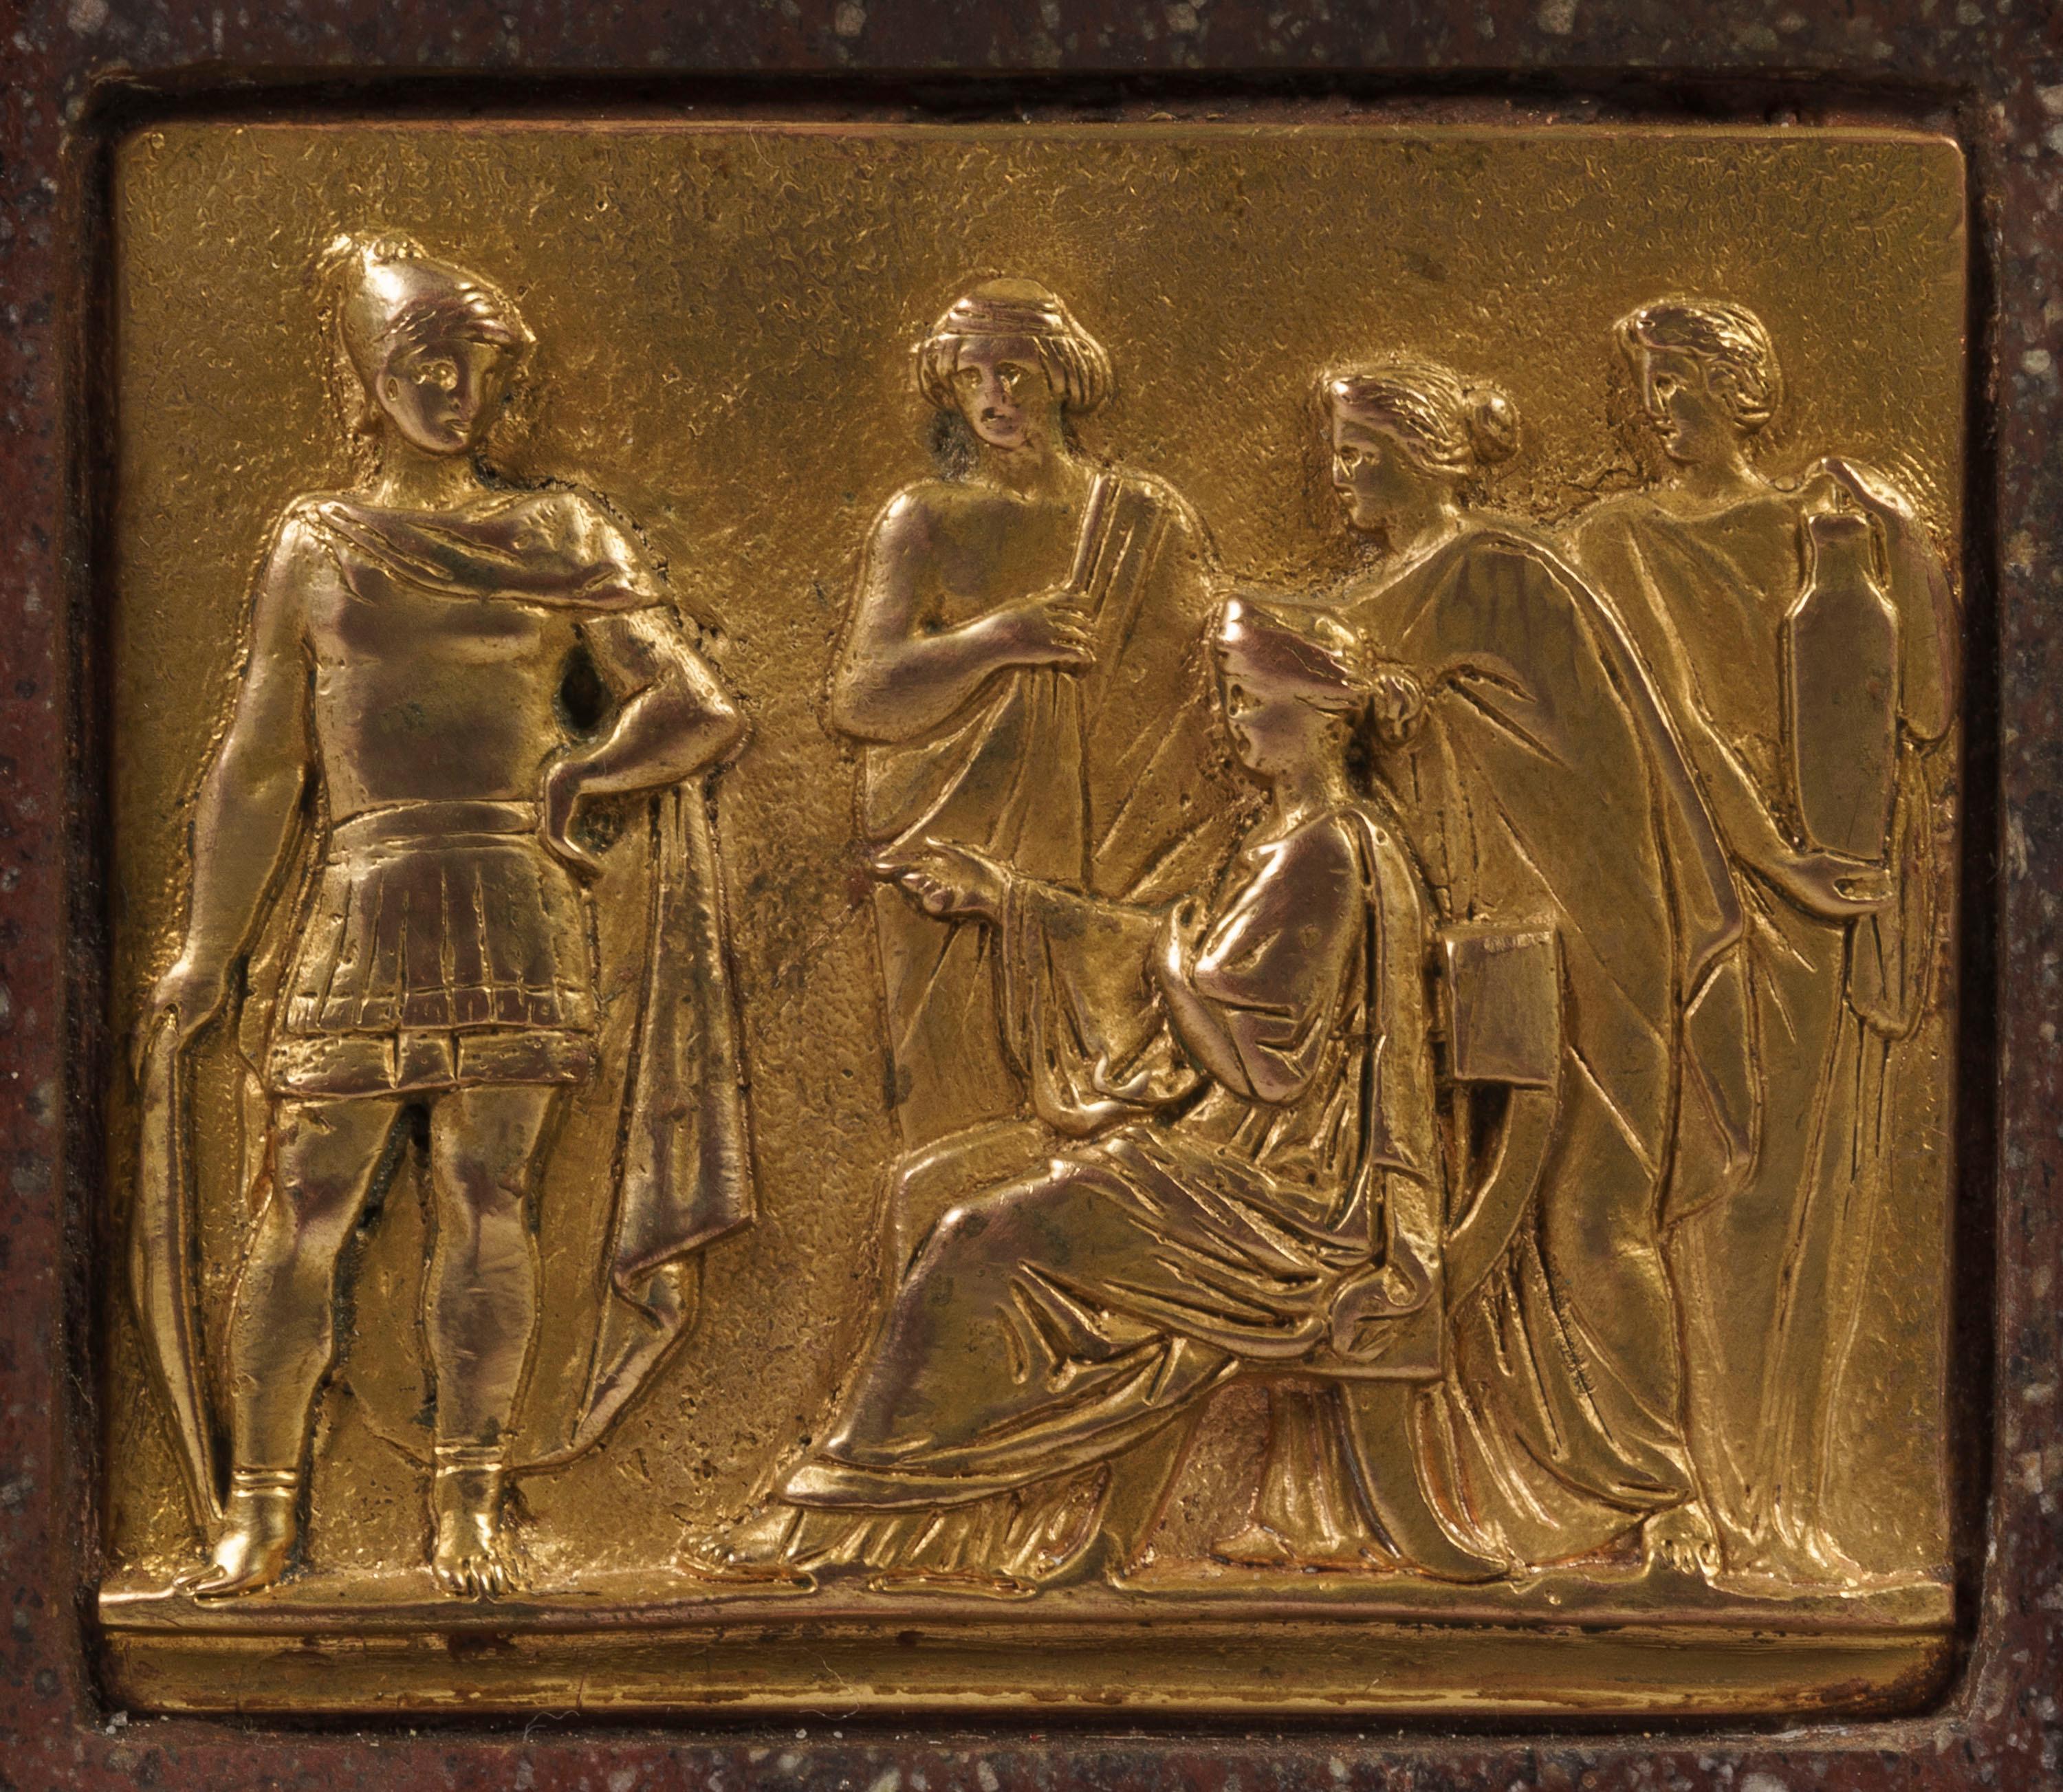 Ein Paar Porphyr- und Ormolu-Kandelaber im Stil Louis XVI.
Auf einem quadratischen Sockel, der von vergoldeten Bronzefüßen getragen wird, erhebt sich eine gestufte Ormolu-Bordüre mit steifen Blättern; in den Porphyrsockel sind klassische Plaketten